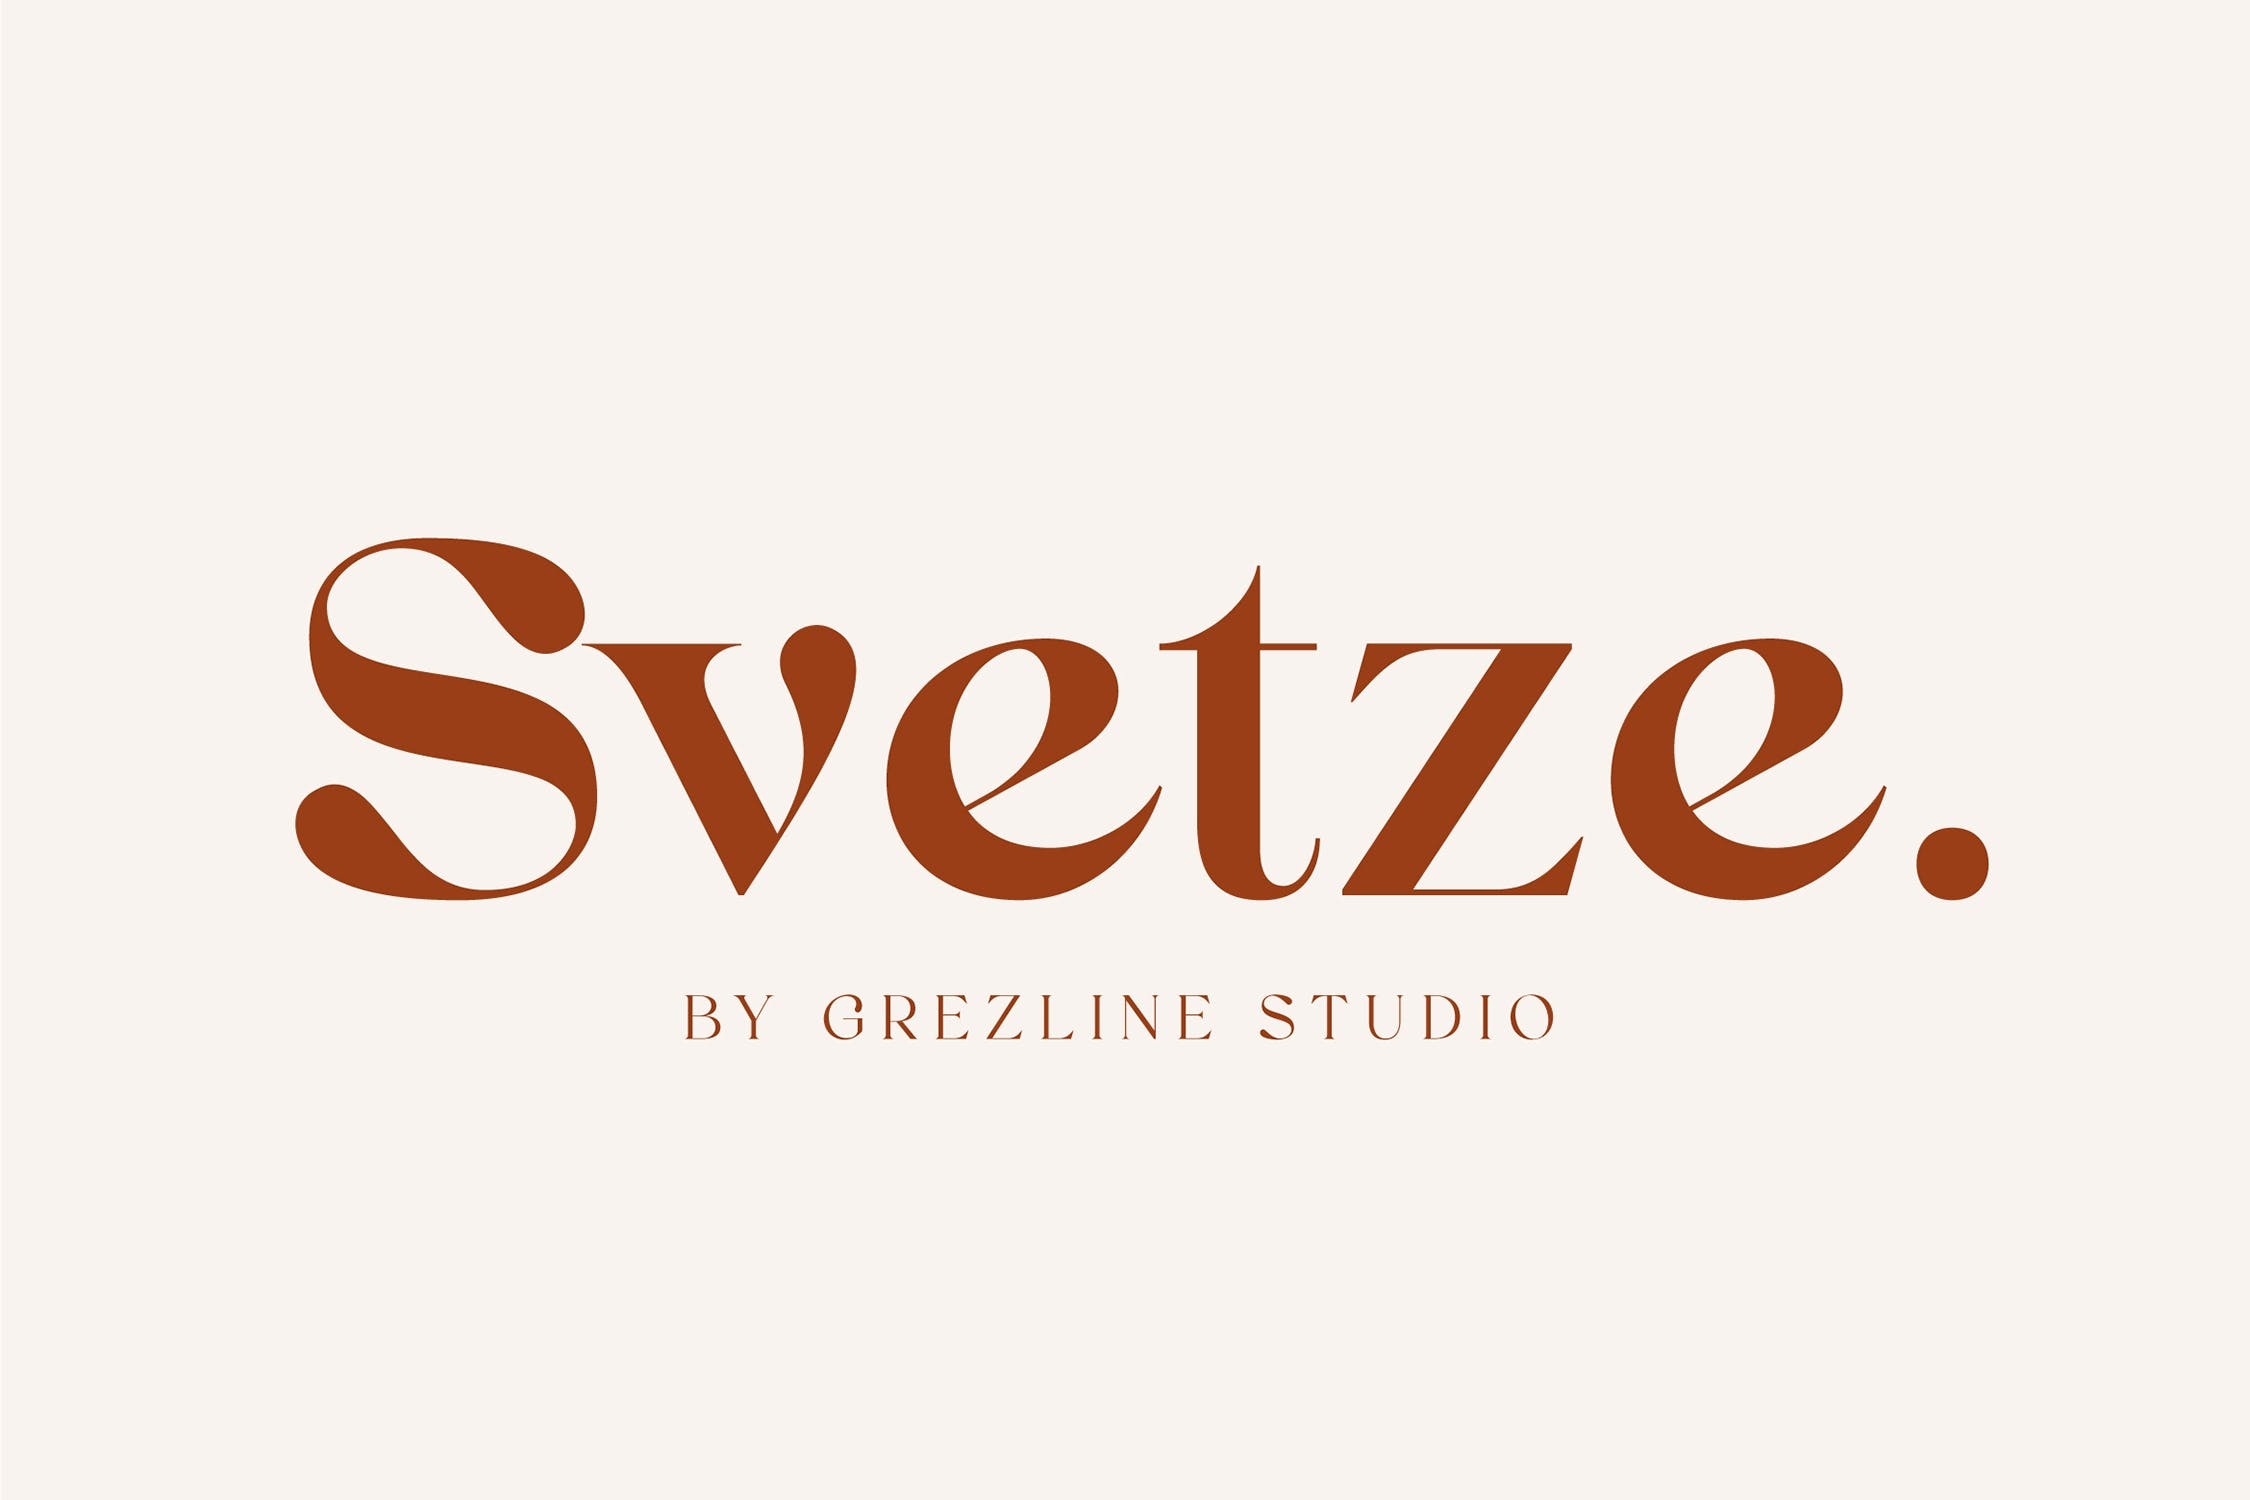 Ejemplo de fuente Svetze